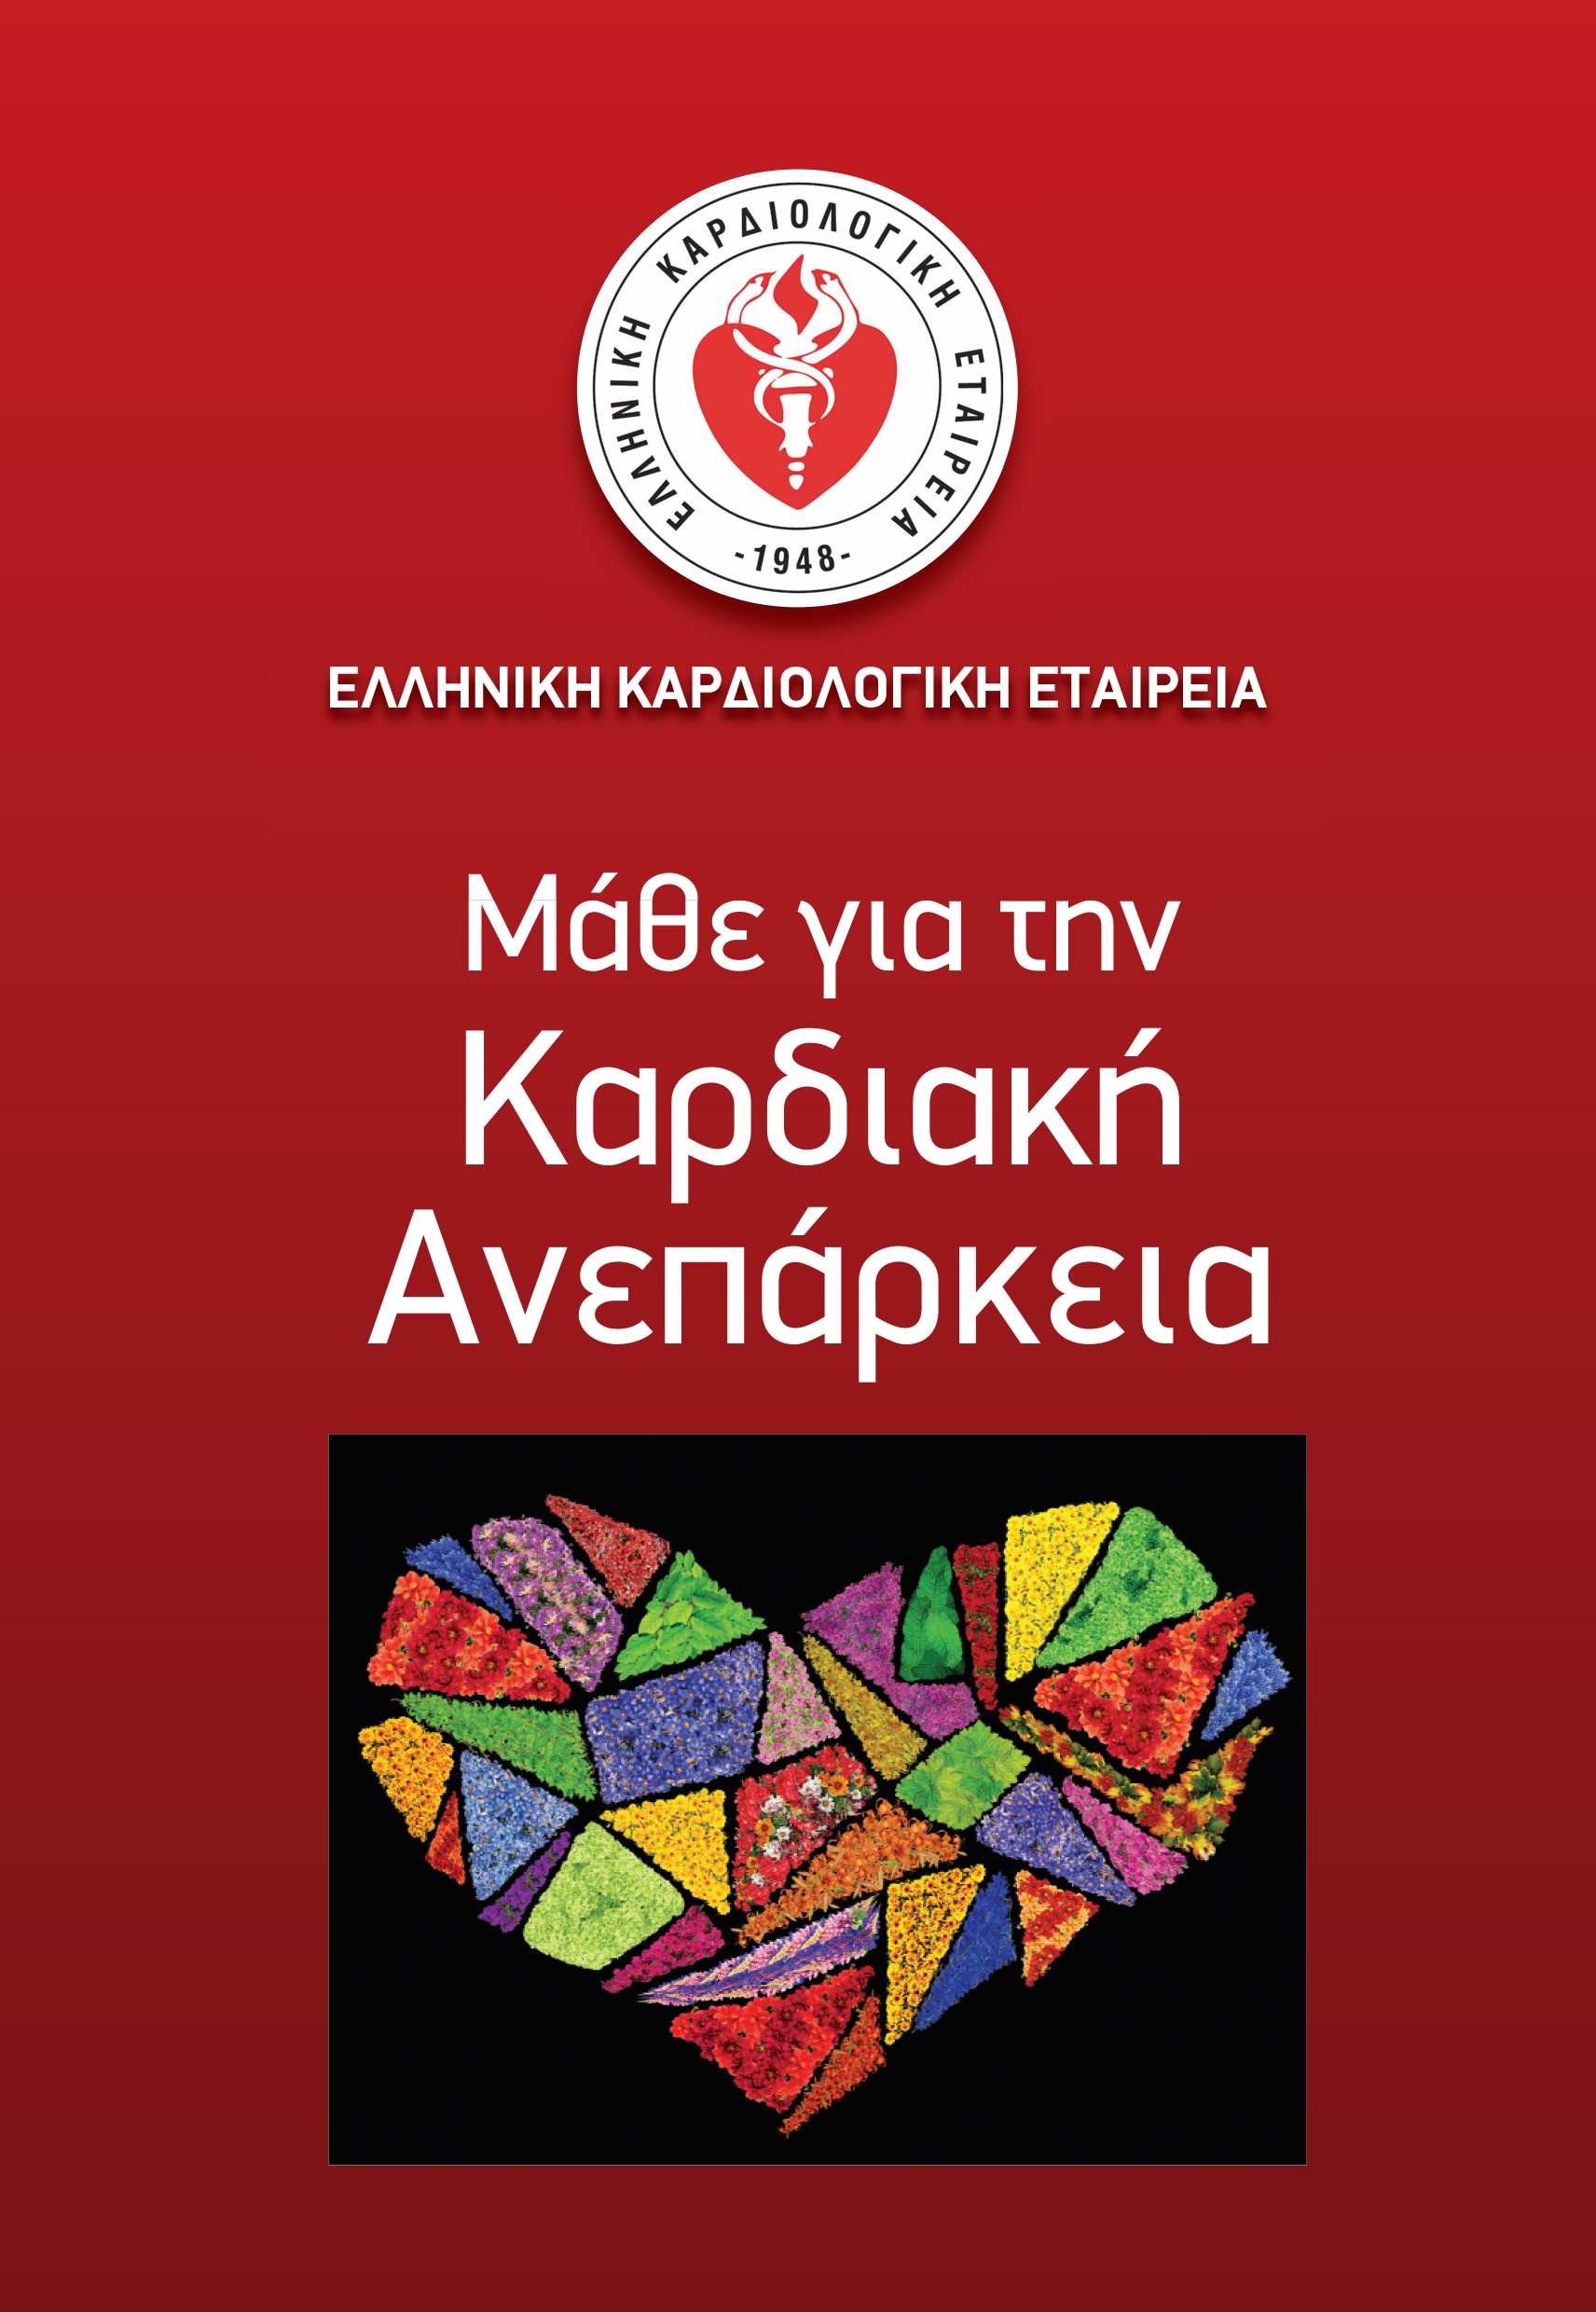 Η Ελληνική Καρδιολογική Εταιρεία για την Πρόληψη, Διάγνωση και Θεραπεία της Καρδιακής Ανεπάρκειας